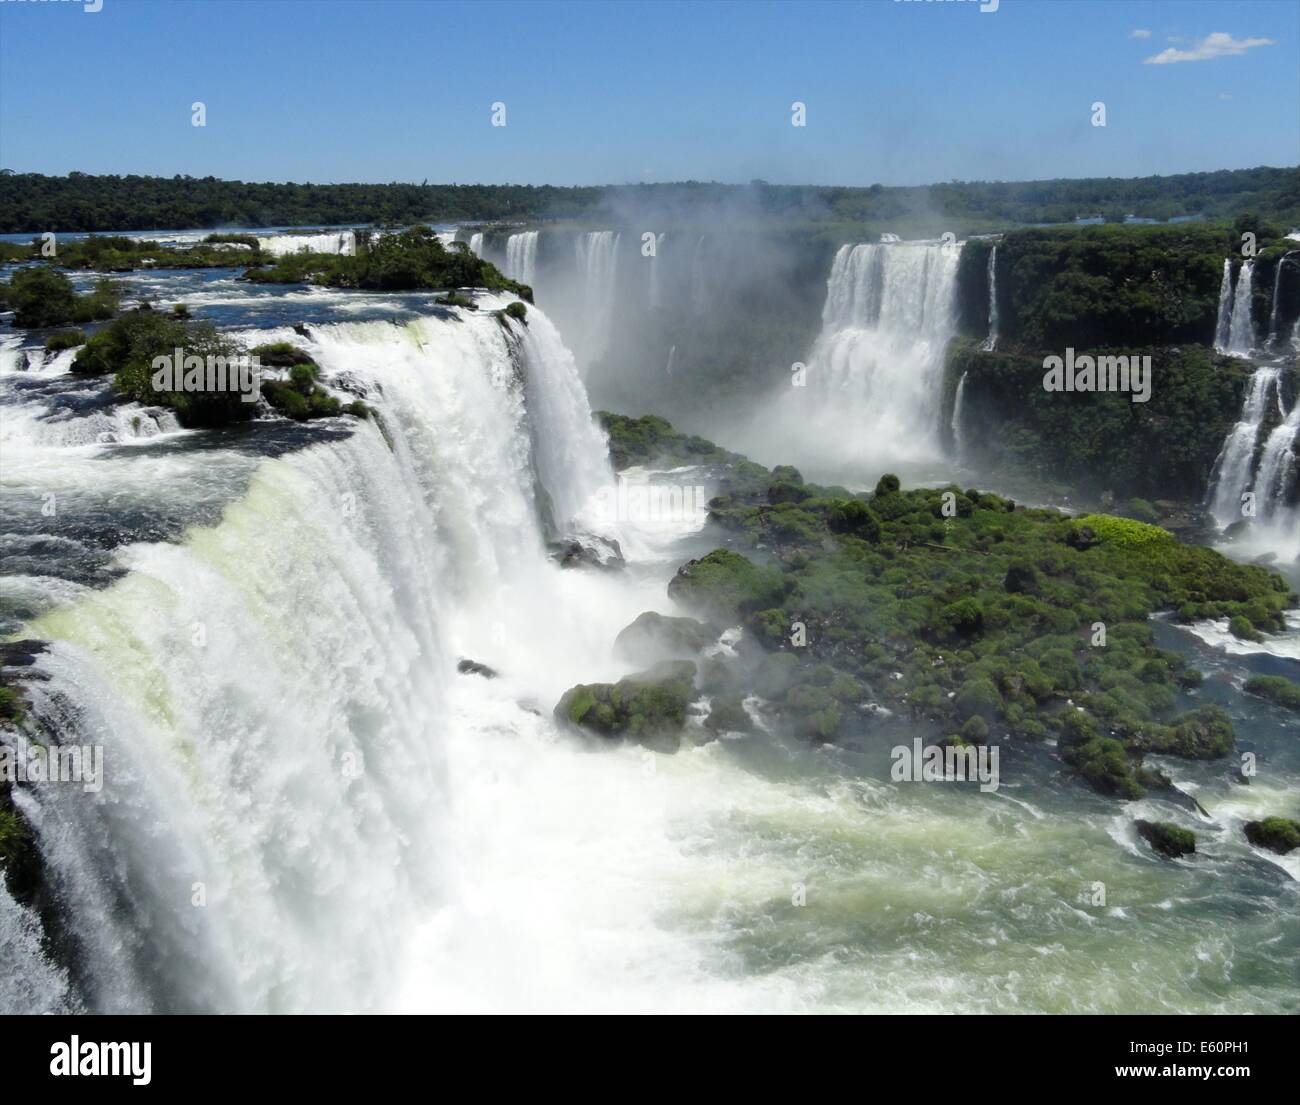 Chutes d'Iguaçu, l'une des merveilles naturelles du monde, à la frontière de l'Argentine et le Brésil Banque D'Images